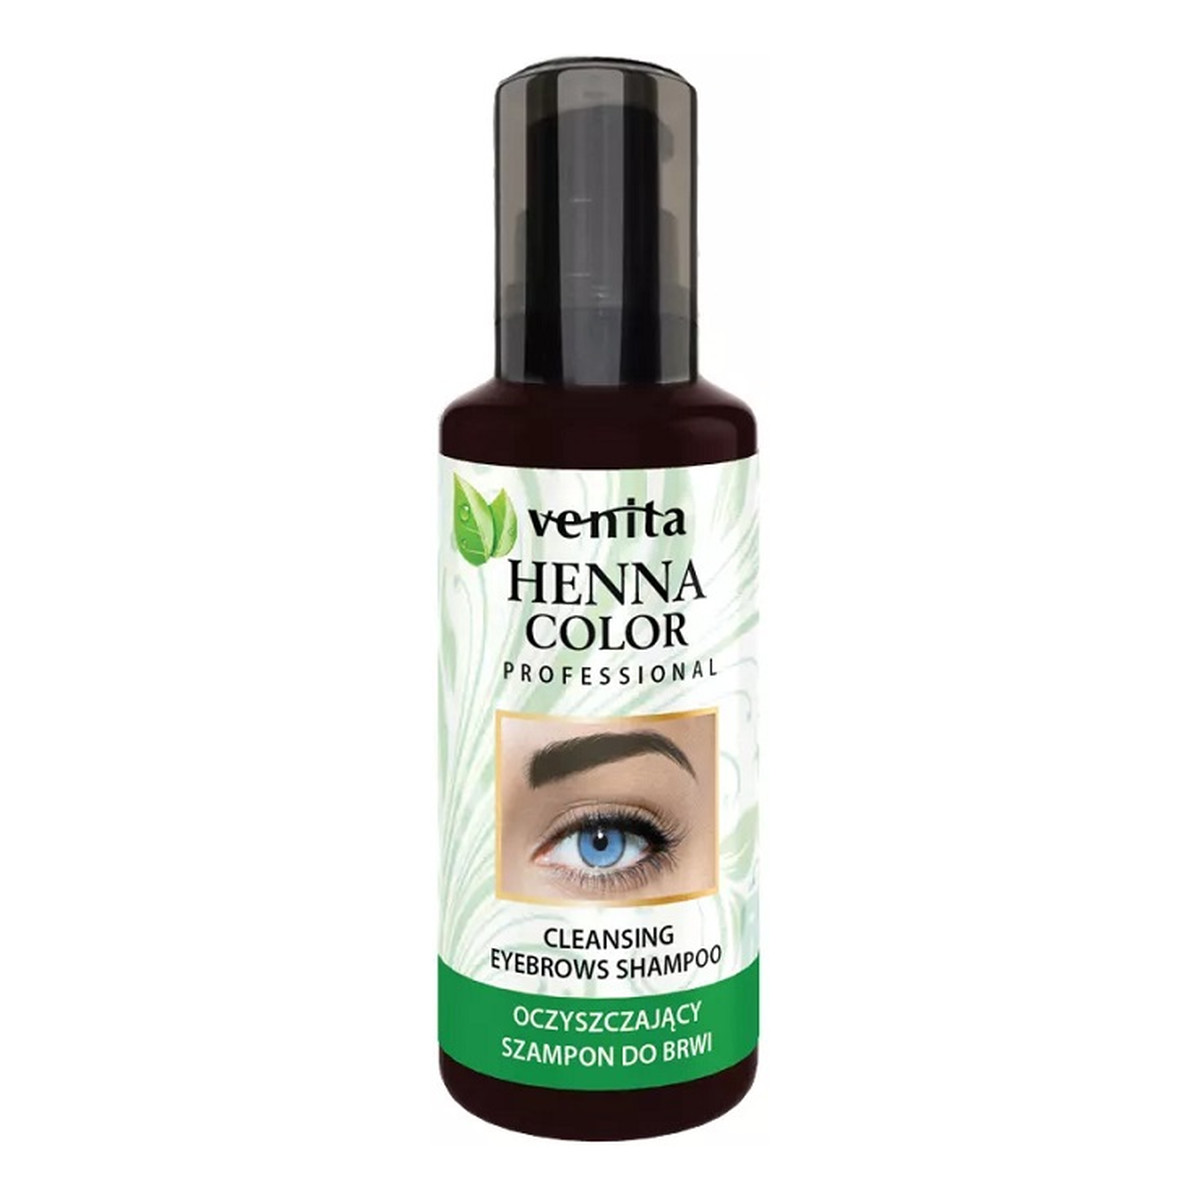 Venita Professional Henna Color Cleansing Eyebrows Shampoo oczyszczający szampon do brwi 50ml